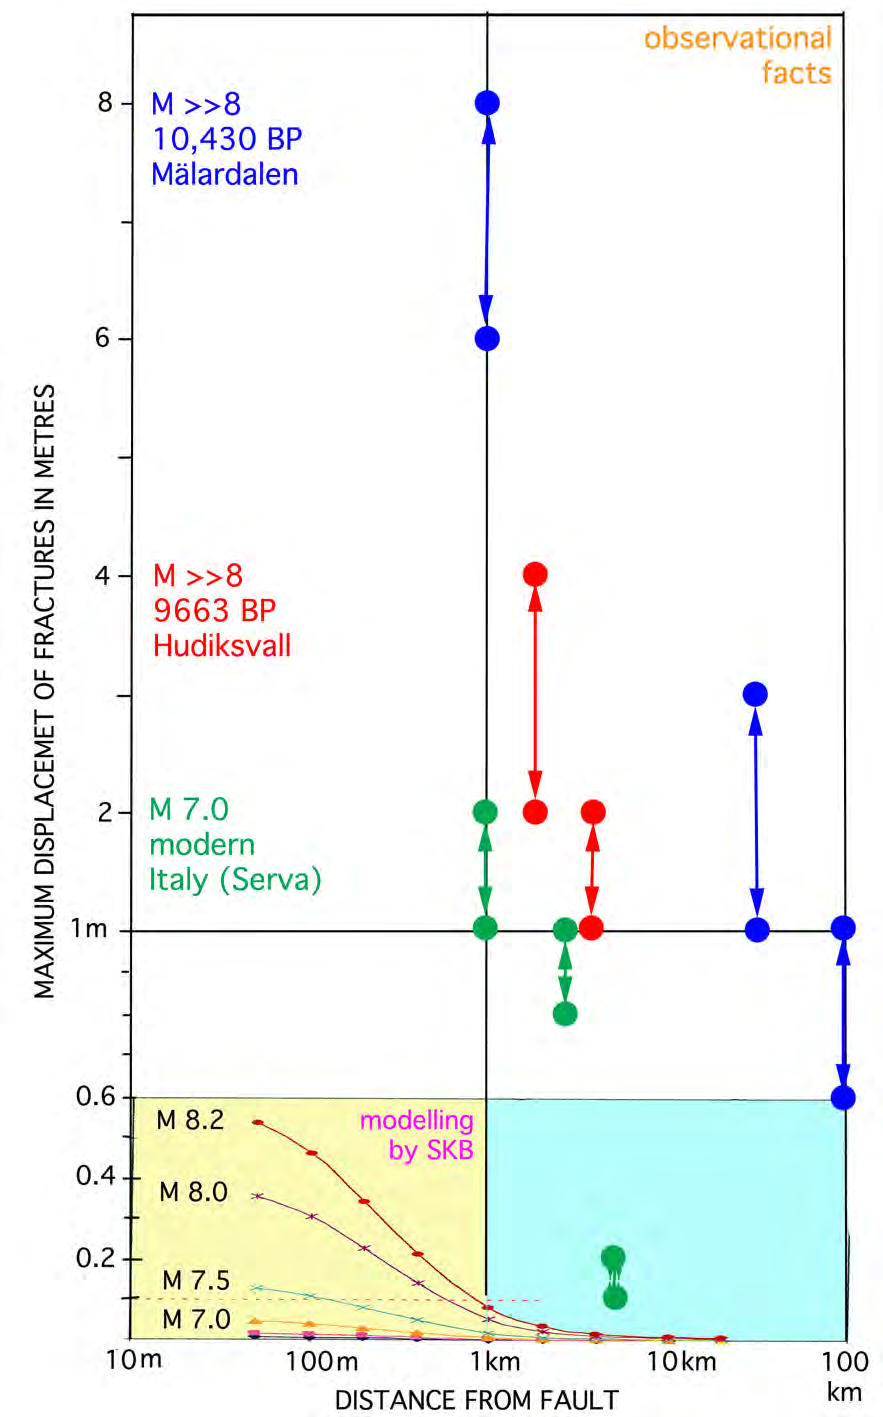 Figur 5 Respektavståndet : Jämförelse i förskjutning (y-axel) med distans från en förkastning (x-axel) enligt SKB:s teoretiska modell (gult fält) och verkliga